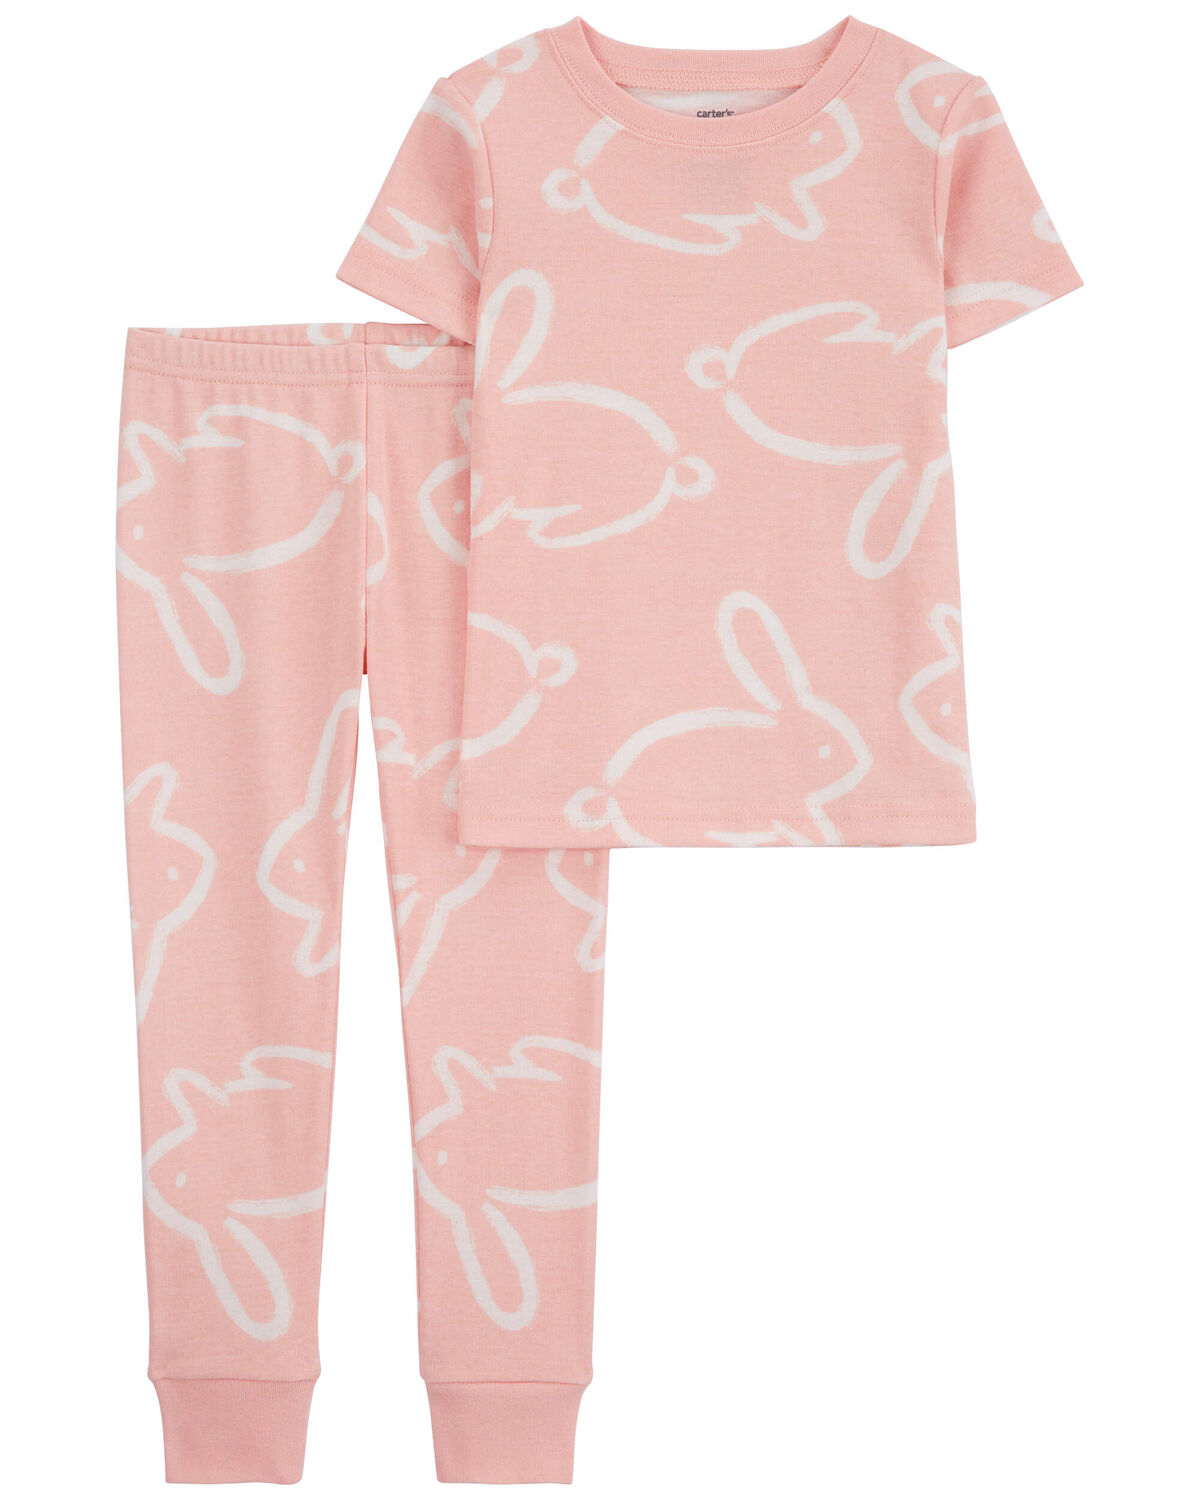 Baby 2-Piece Bunny 100% Snug Fit Cotton Pajamas